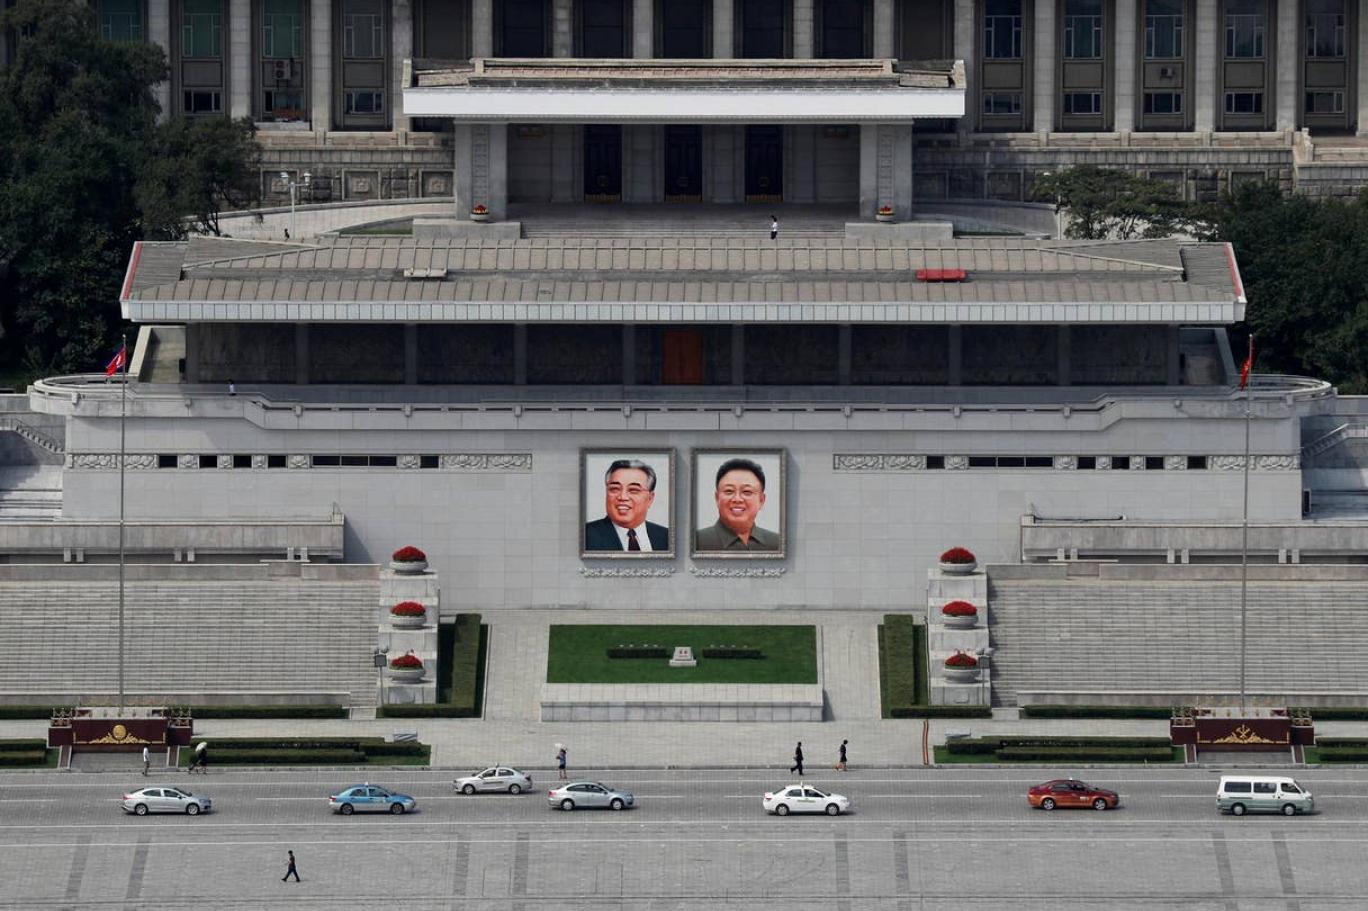 فرق موت في كوريا الشمالية تعدم مواطنين في المدارس والأماكن العامة